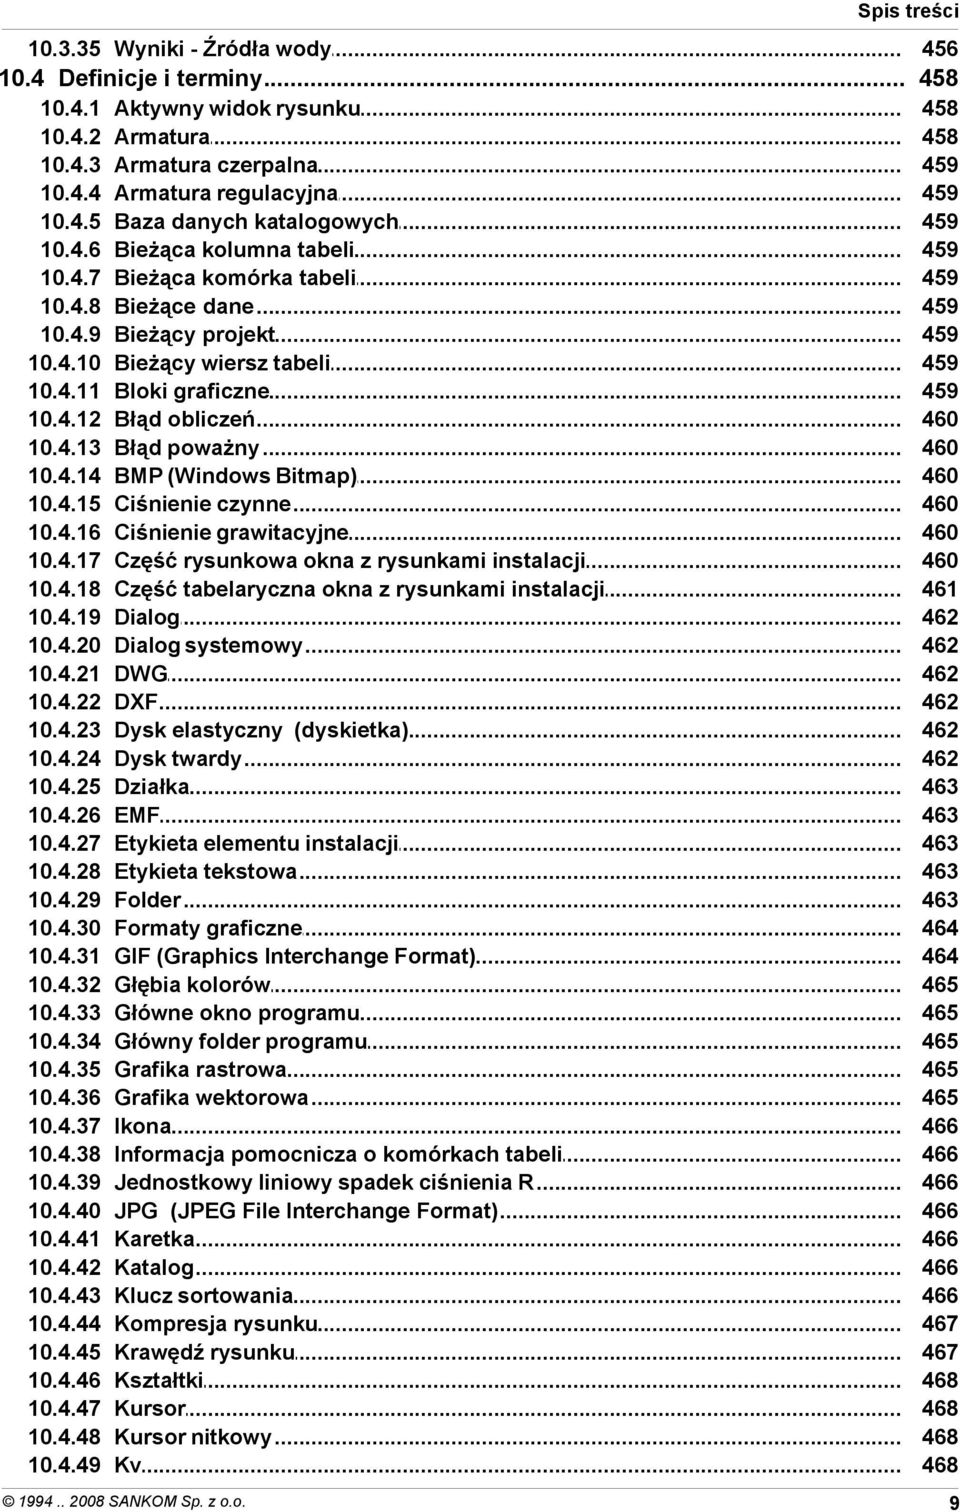 4.42 10.4.43 10.4.44 10.4.45 10.4.46 10.4.47 10.4.48 10.4.49 Aktywny widok rysunku Armatura Armatura czerpalna Armatura regulacyjna Baza danych katalogowych Bieżąca kolumna tabeli Bieżąca komórka